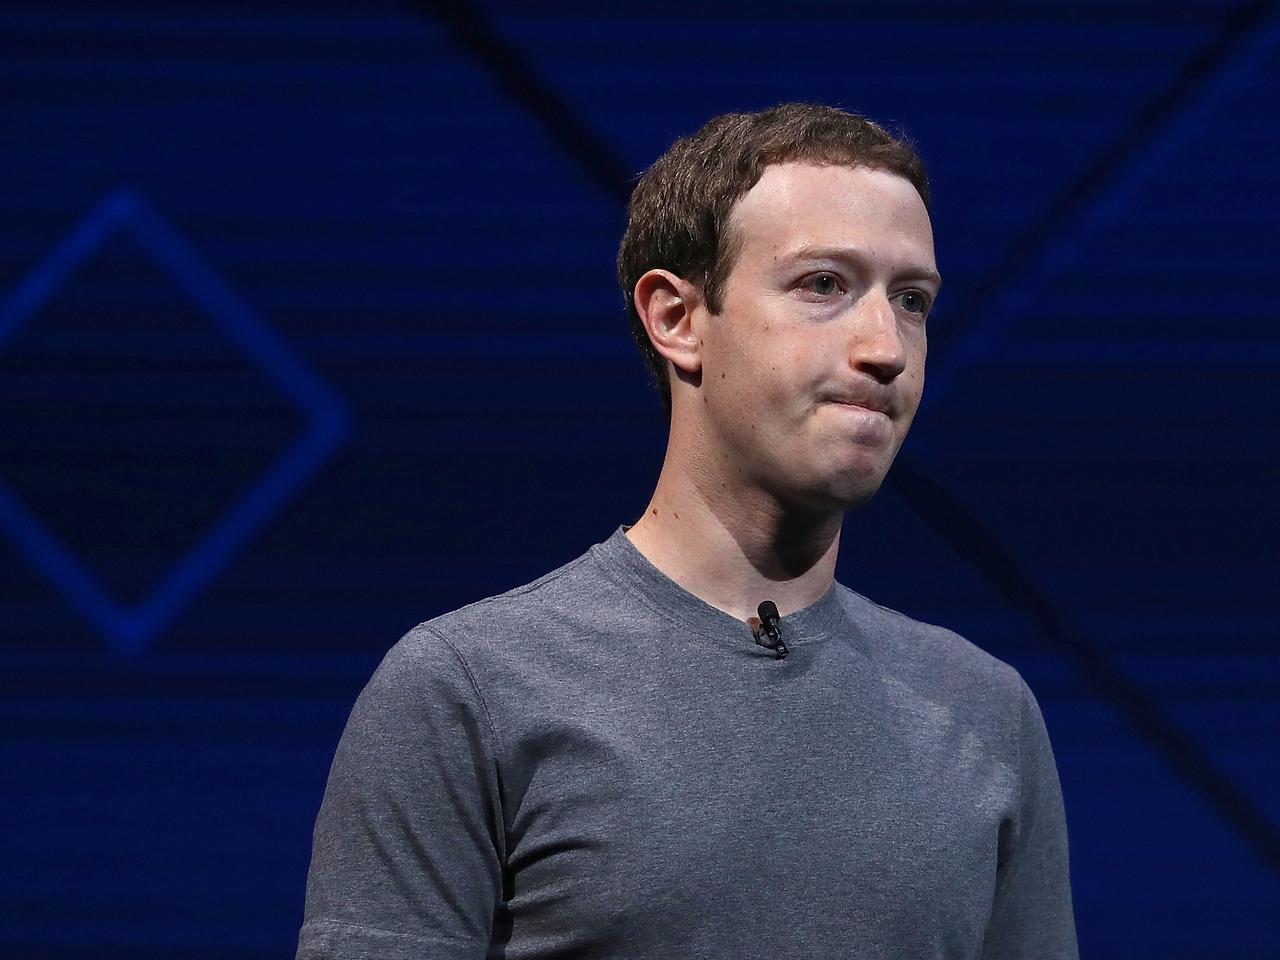 ヘイトスピーチ判別の難しさ、Facebookが認める